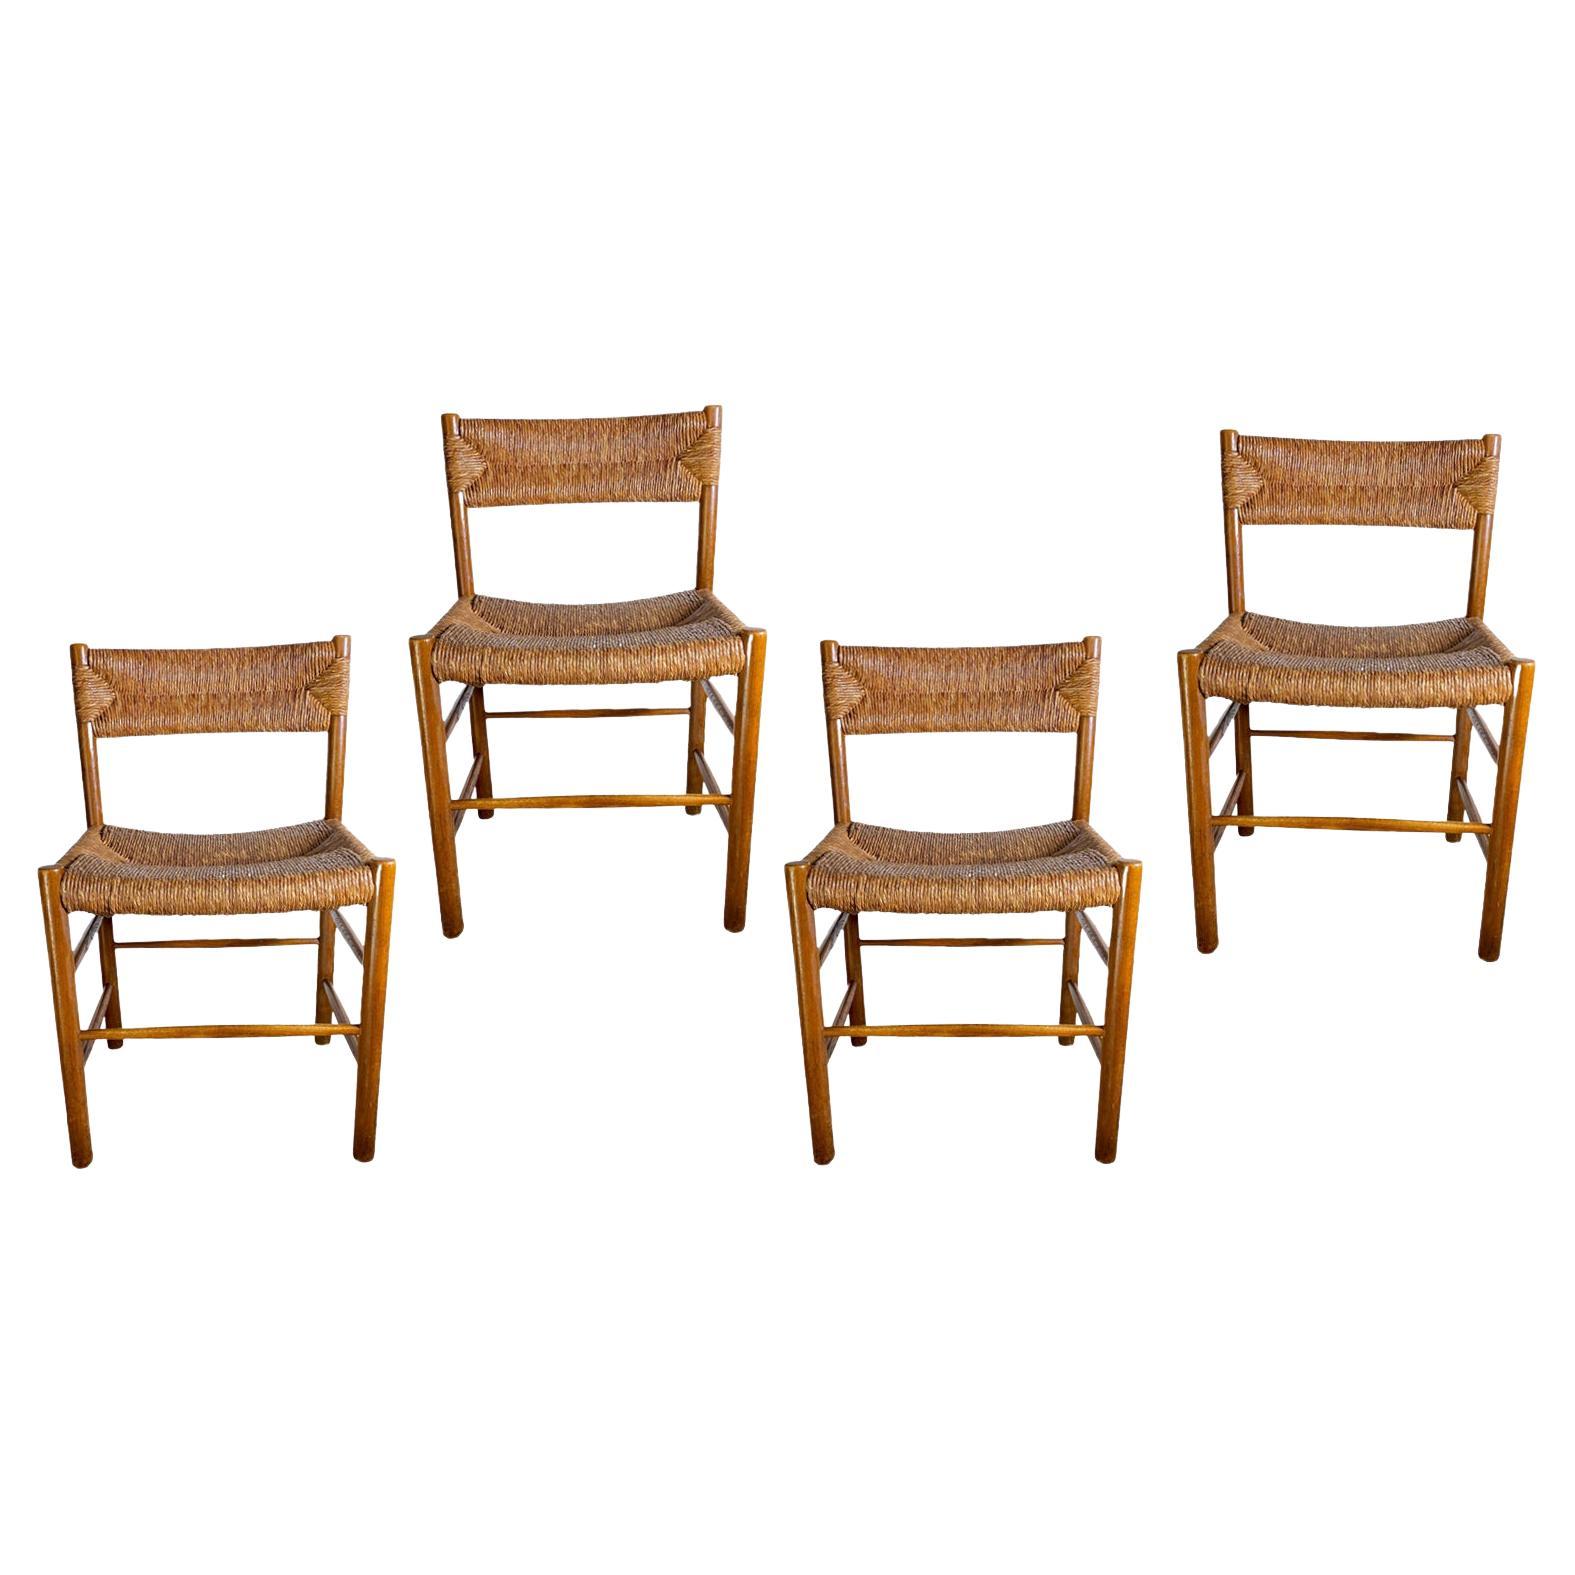 Nous avons ici un lot très rare, de 4 chaises identiques, du modèle Dordogne, par Charlotte Perriand. Cet ensemble, authentique et original, provient d'une famille vivant à Madrid. Cette famille a acheté ses chaises dans les années 1960. Ils n'ont